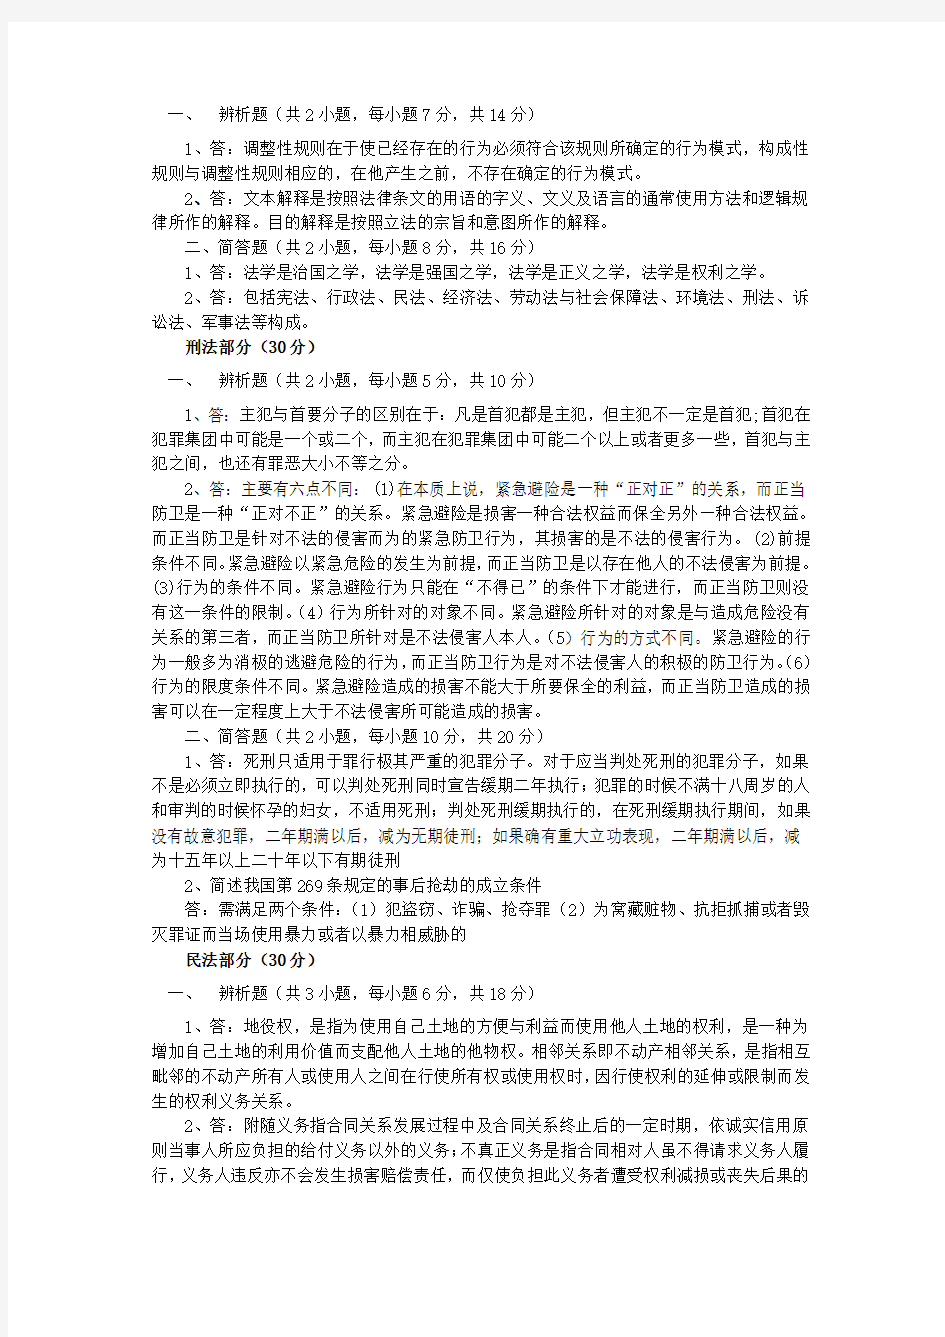 武汉大学综合知识(含法理、行政法、刑法、民法、国际法)(623)2010年考研试题及答案